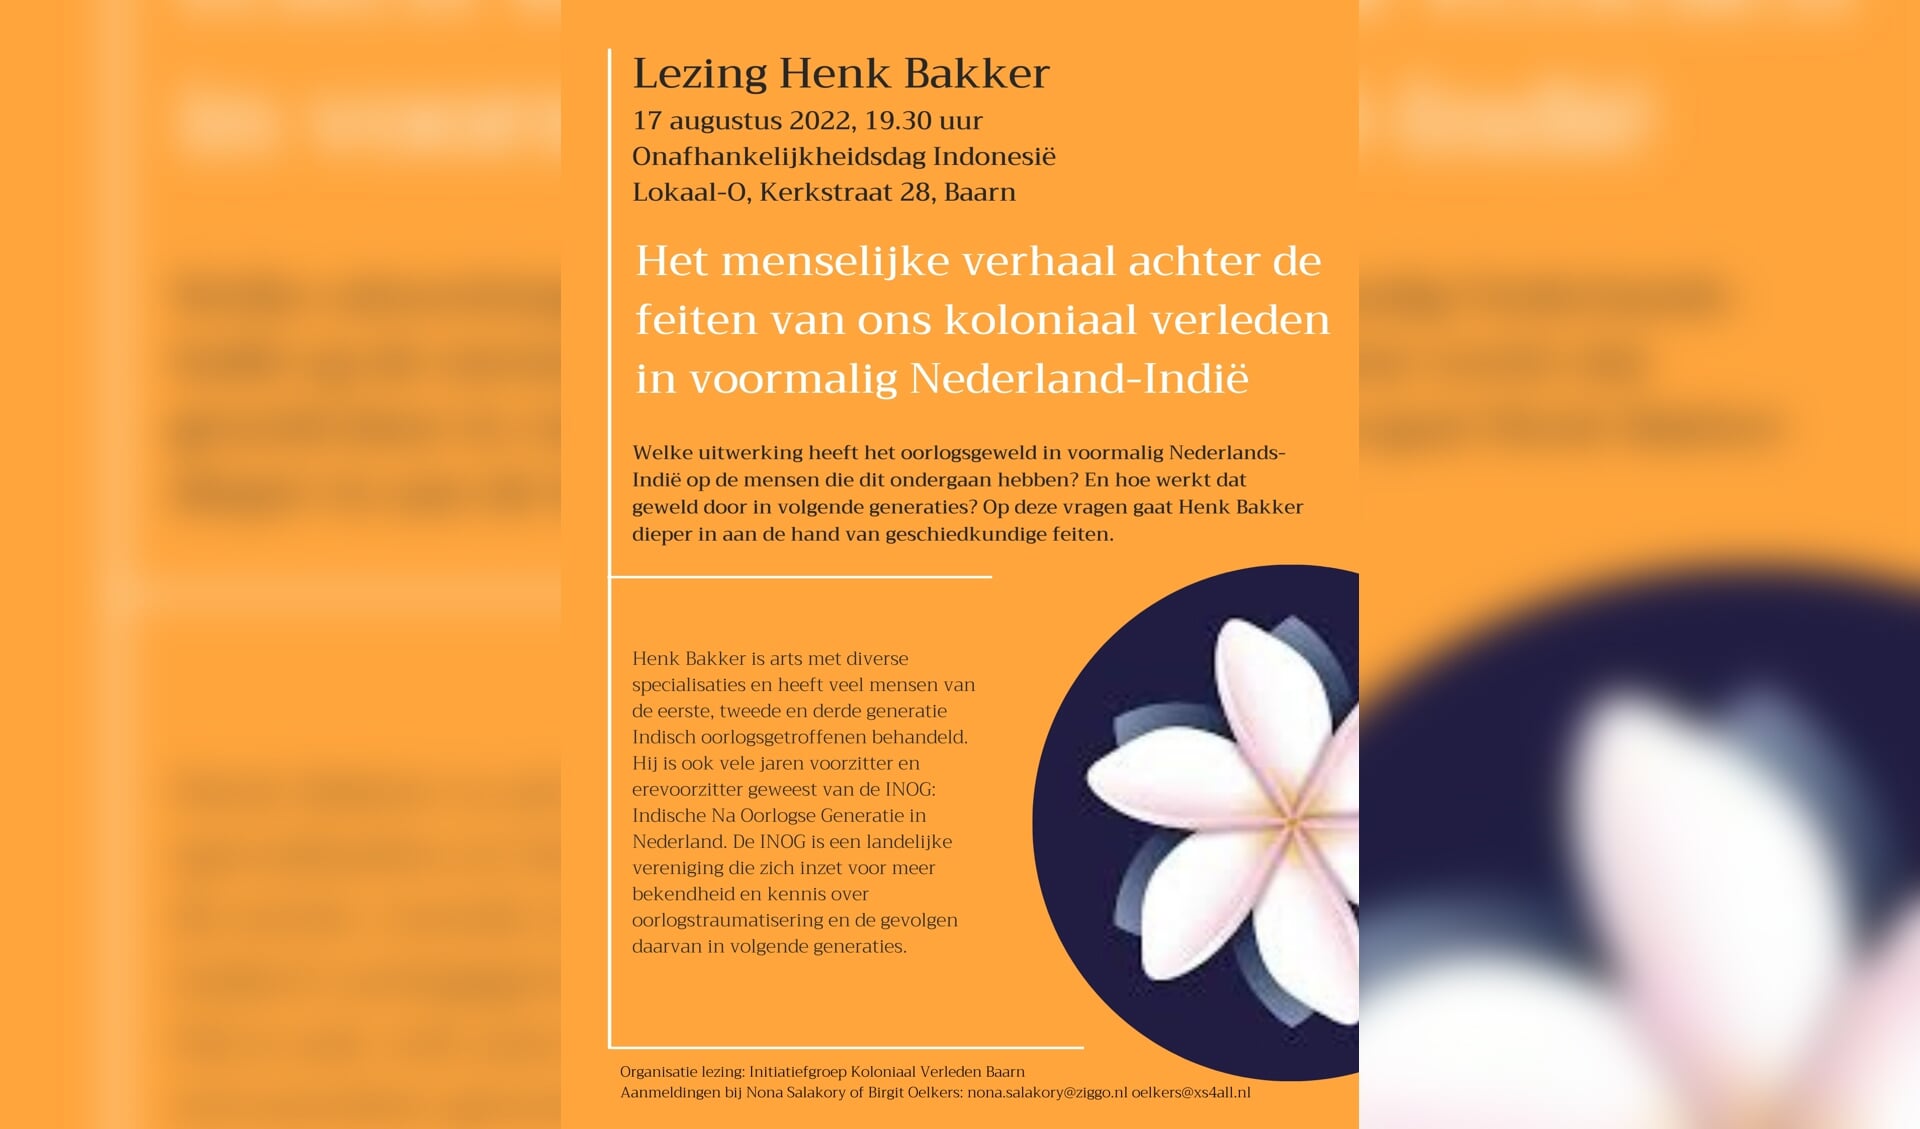 Lezing Henk Bakker: 